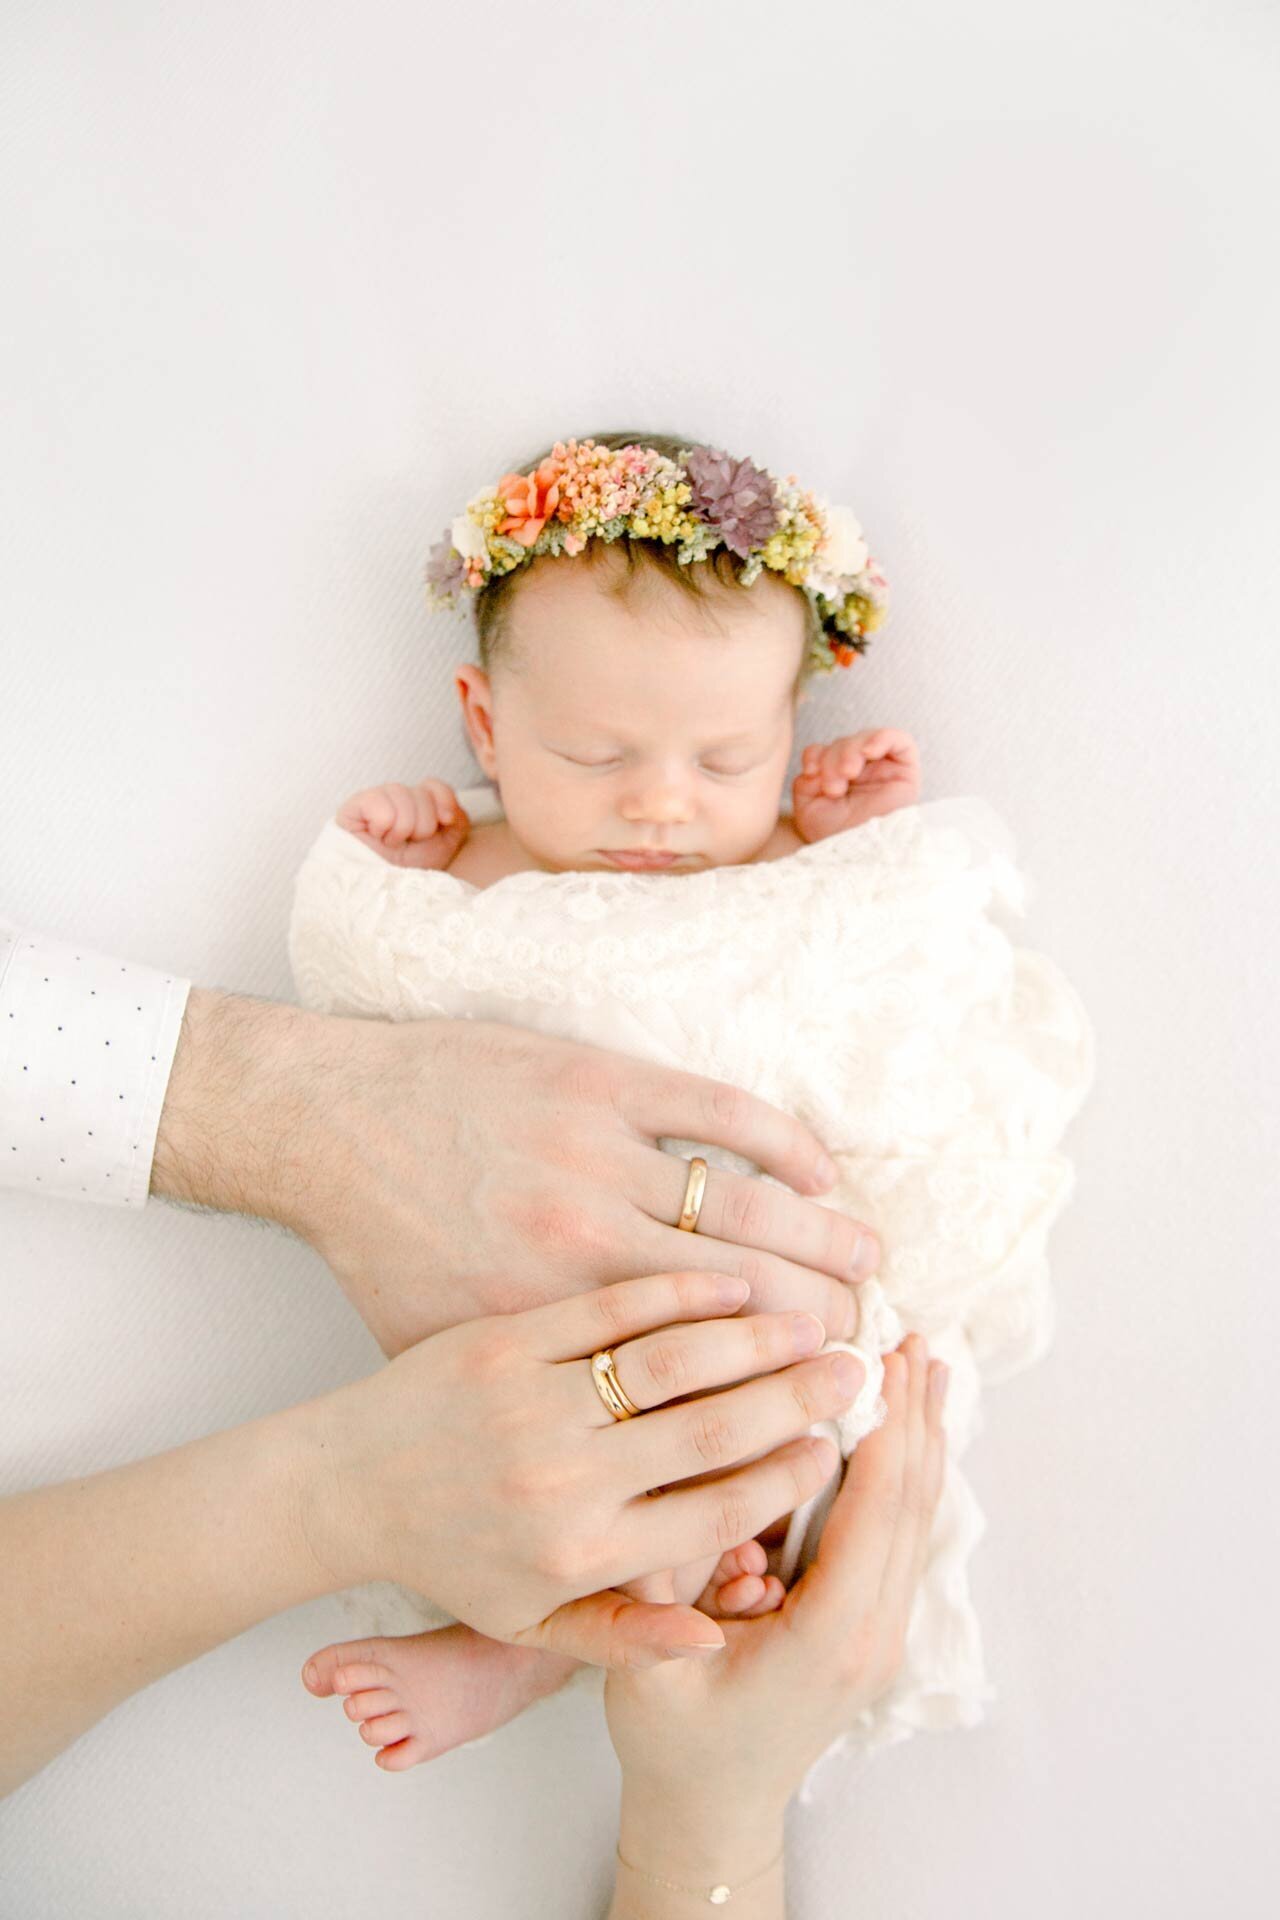 Neugeborenenshooting Bielefeld: Schlafendes Baby mit buntem Blumenkranz. Die Hände der Eltern mit Eheringen aufgelegt.